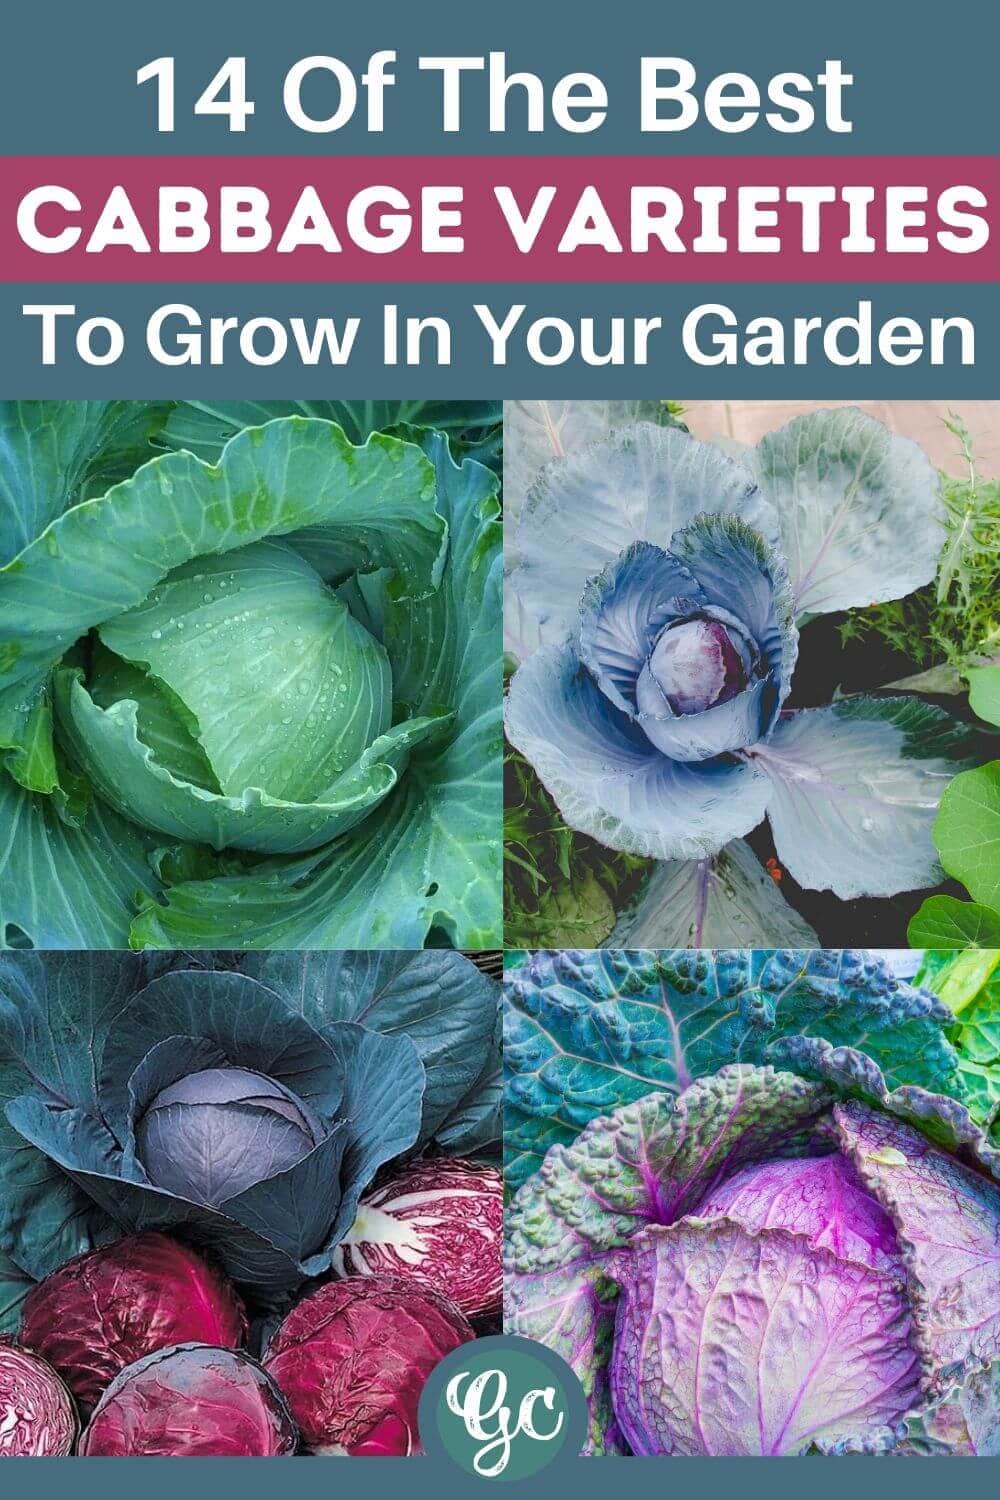  在您的花园里种植14种不同类型的美味卷心菜品种